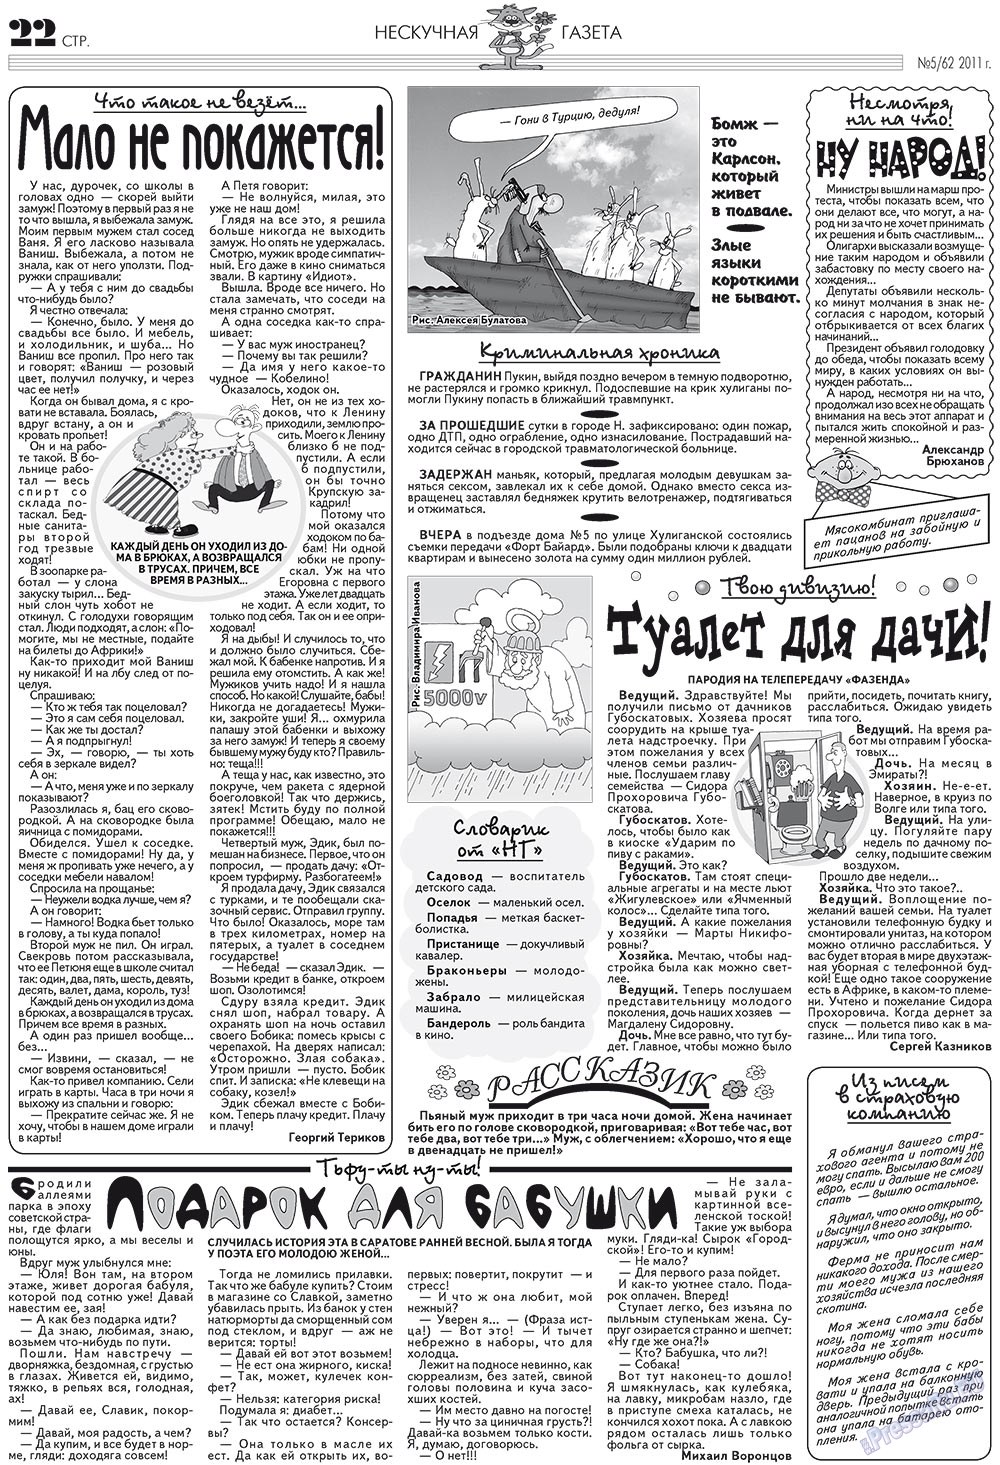 Нескучная газета (журнал). 2011 год, номер 5, стр. 18